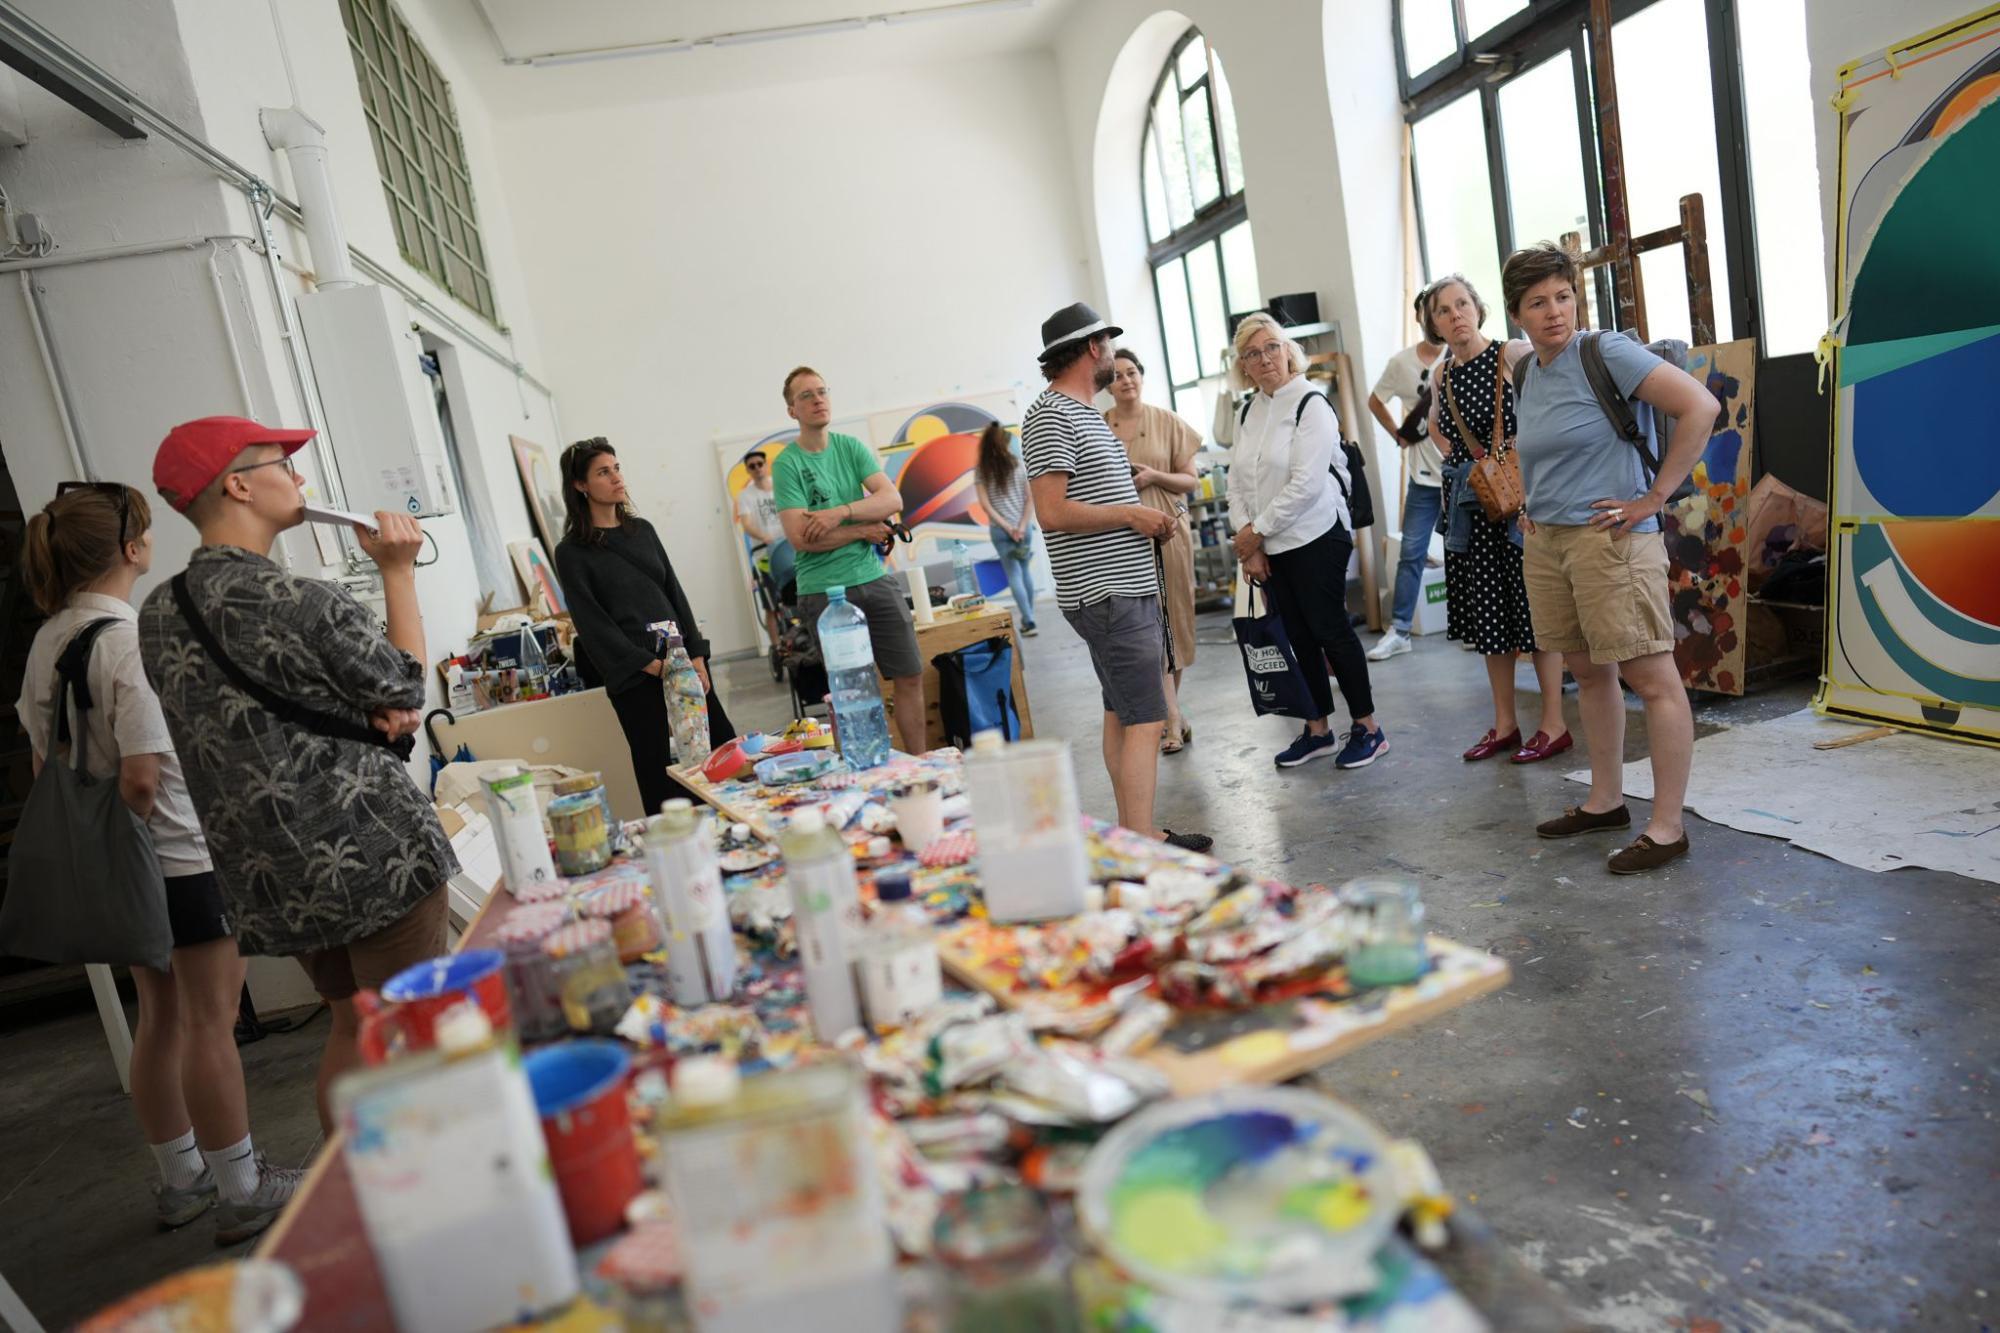 "Grätzl Art Open": Spazierend die Kunst im Bezirk erleben